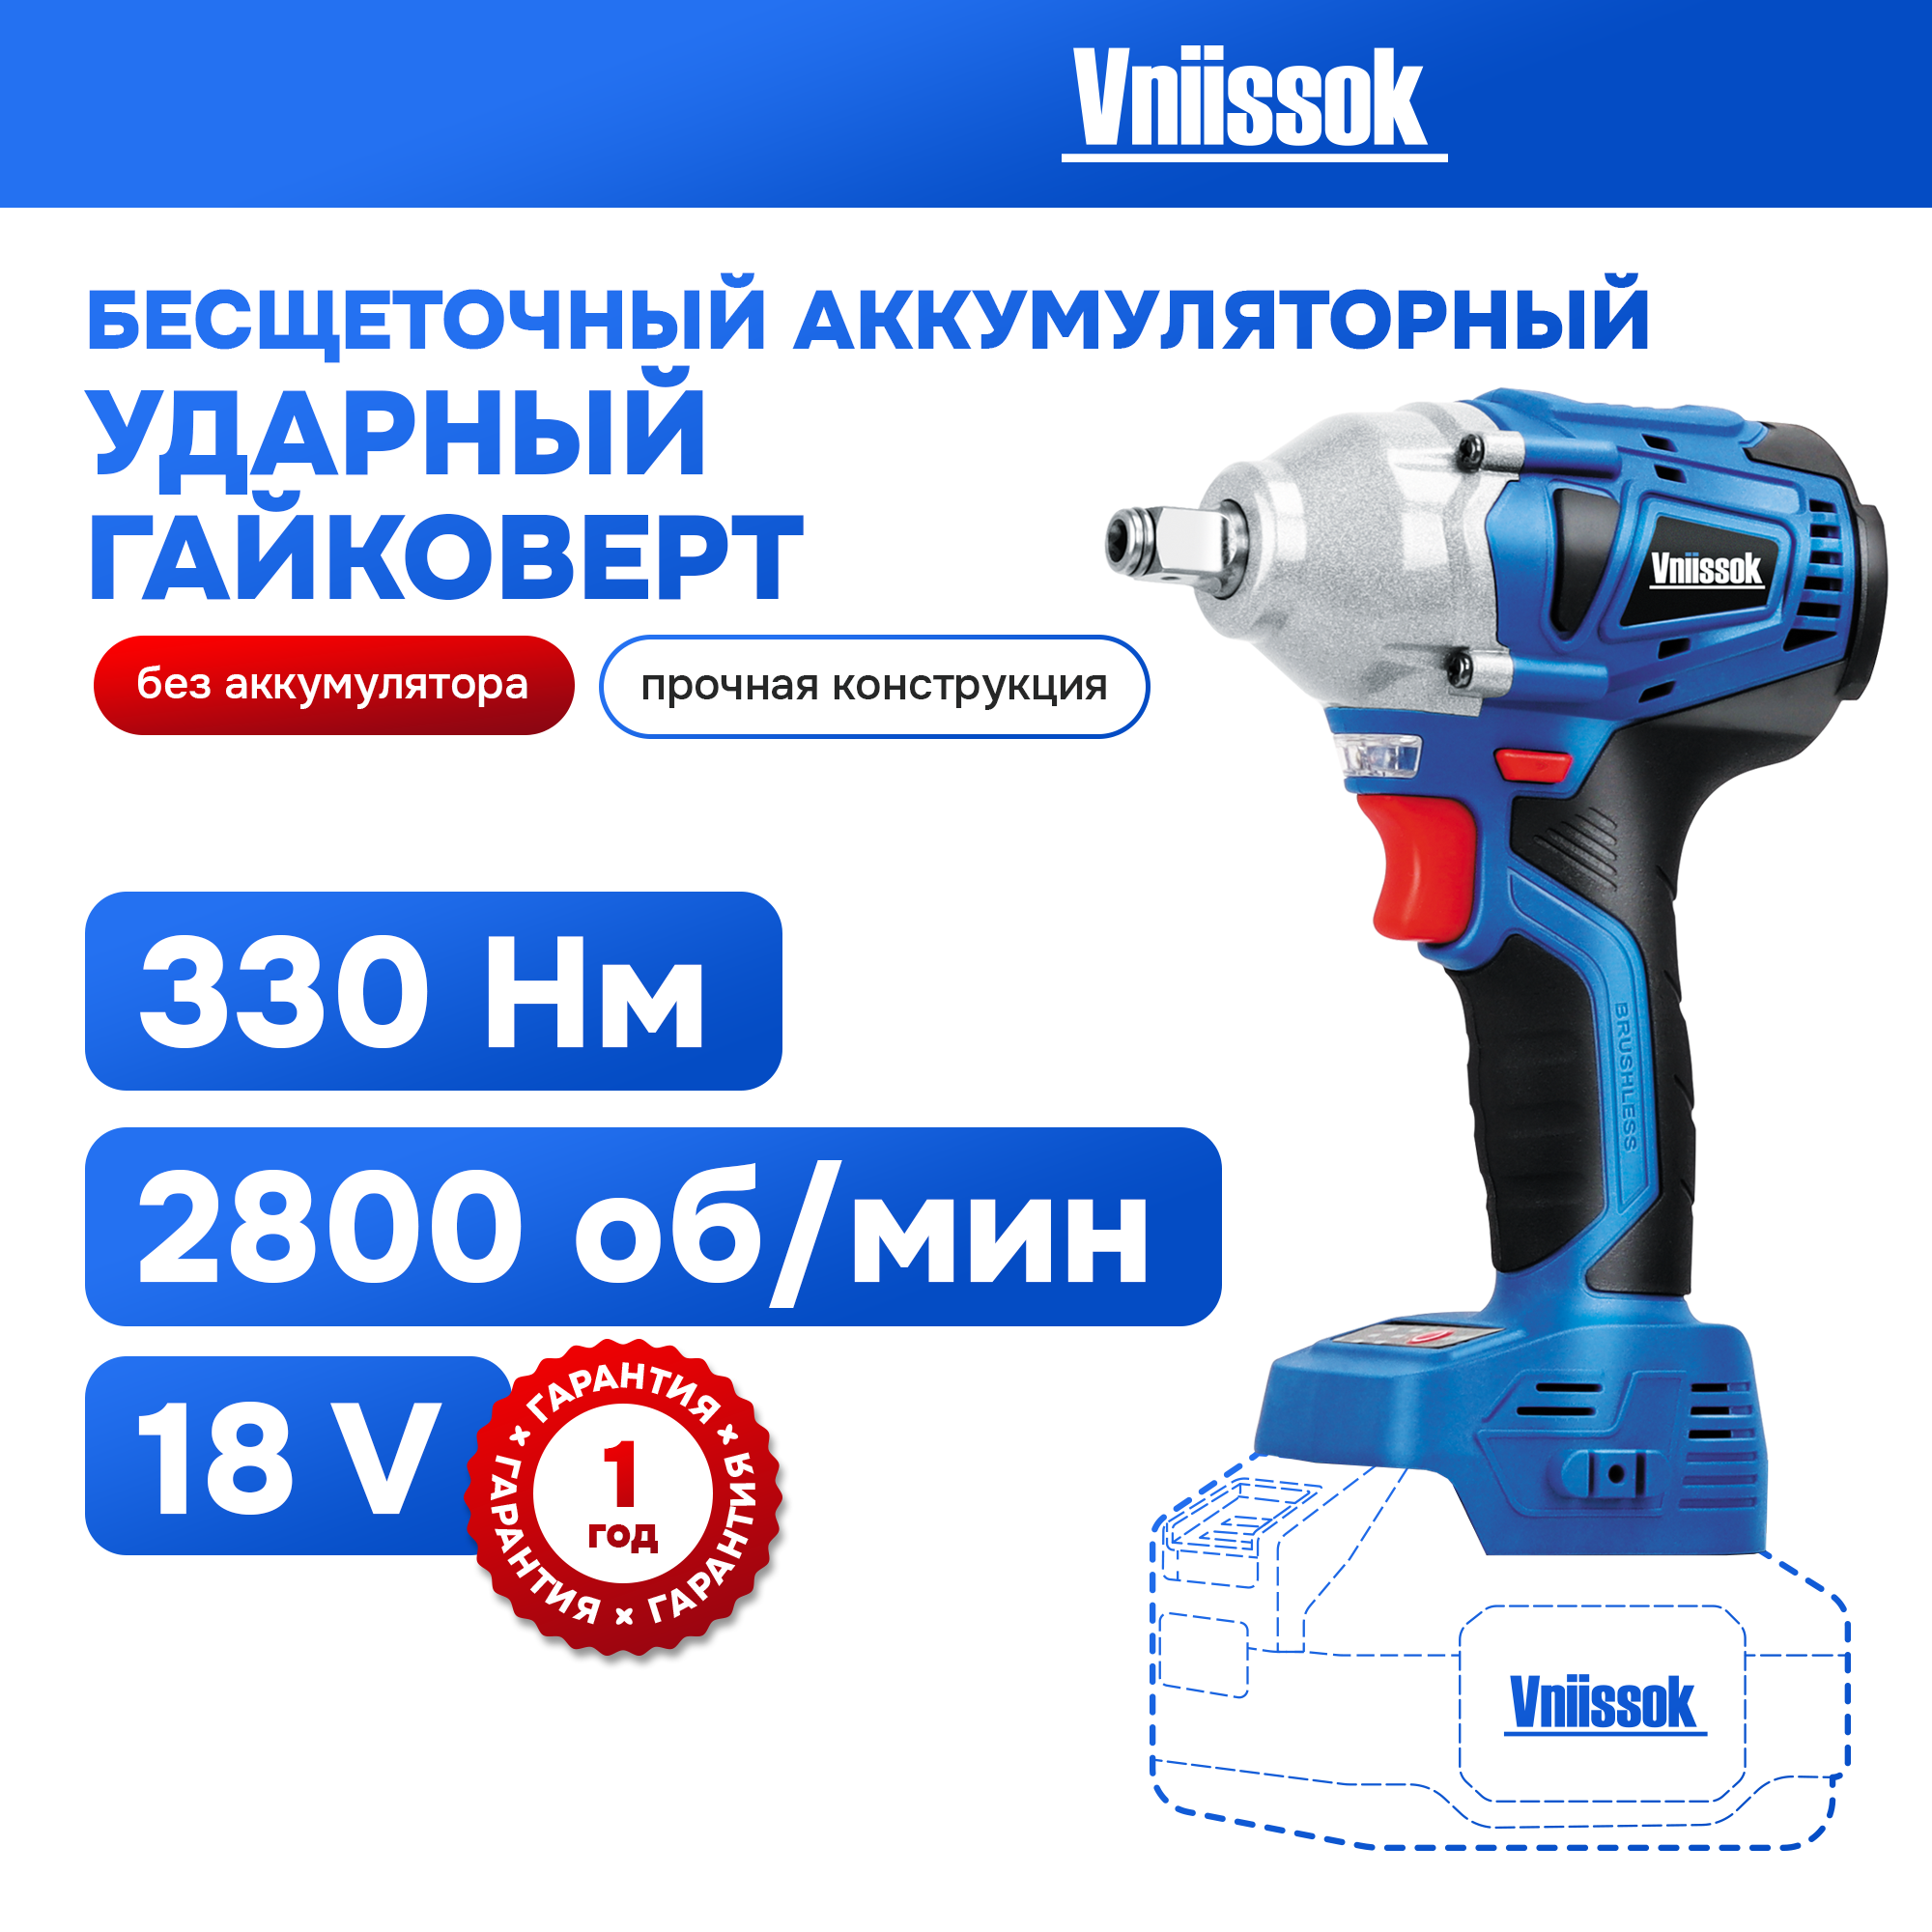 Аккумуляторный гайковерт VNIISSOK V0005 бесщеточный ударный (БЕЗ АКБ) аккумуляторный ударный бесщеточный гайковерт worx